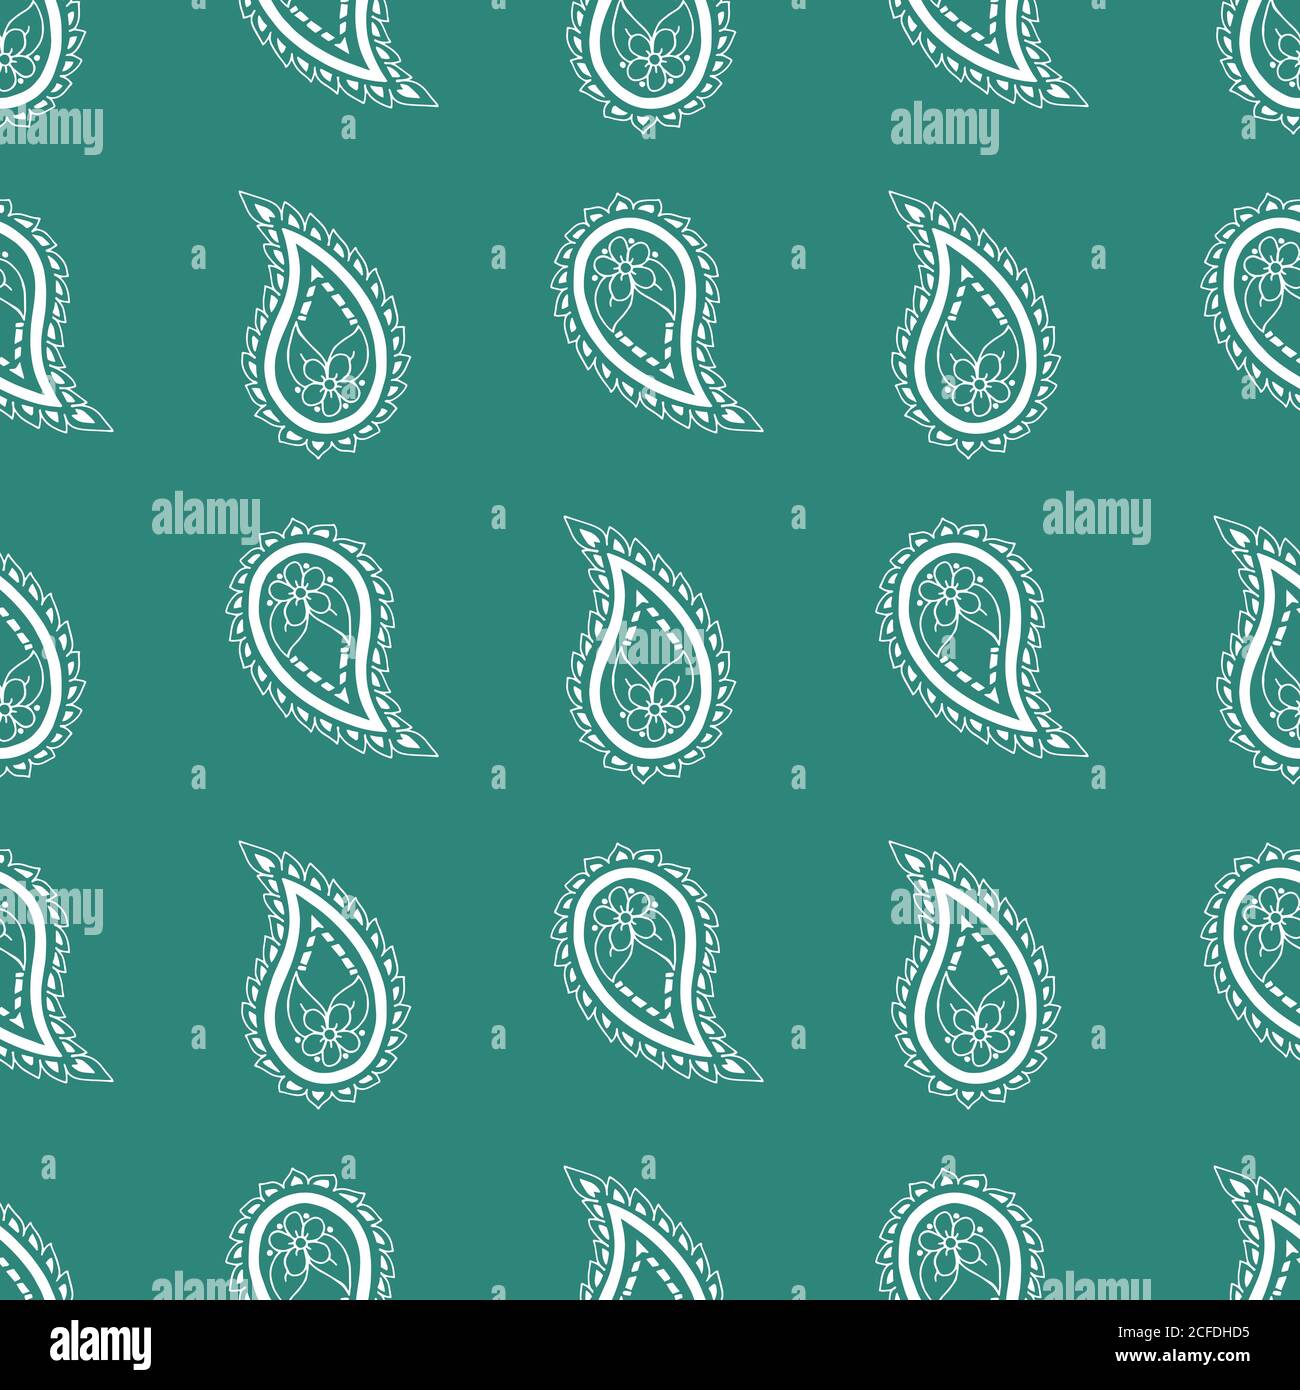 Paisley vettoriale verde e bianco ripetono il pattern senza giunture. Modello storico tradizionale. Texture infinita alla moda per carta digitale, tessuto, sfondi, carta da imballaggio e tessuto. Illustrazione Vettoriale